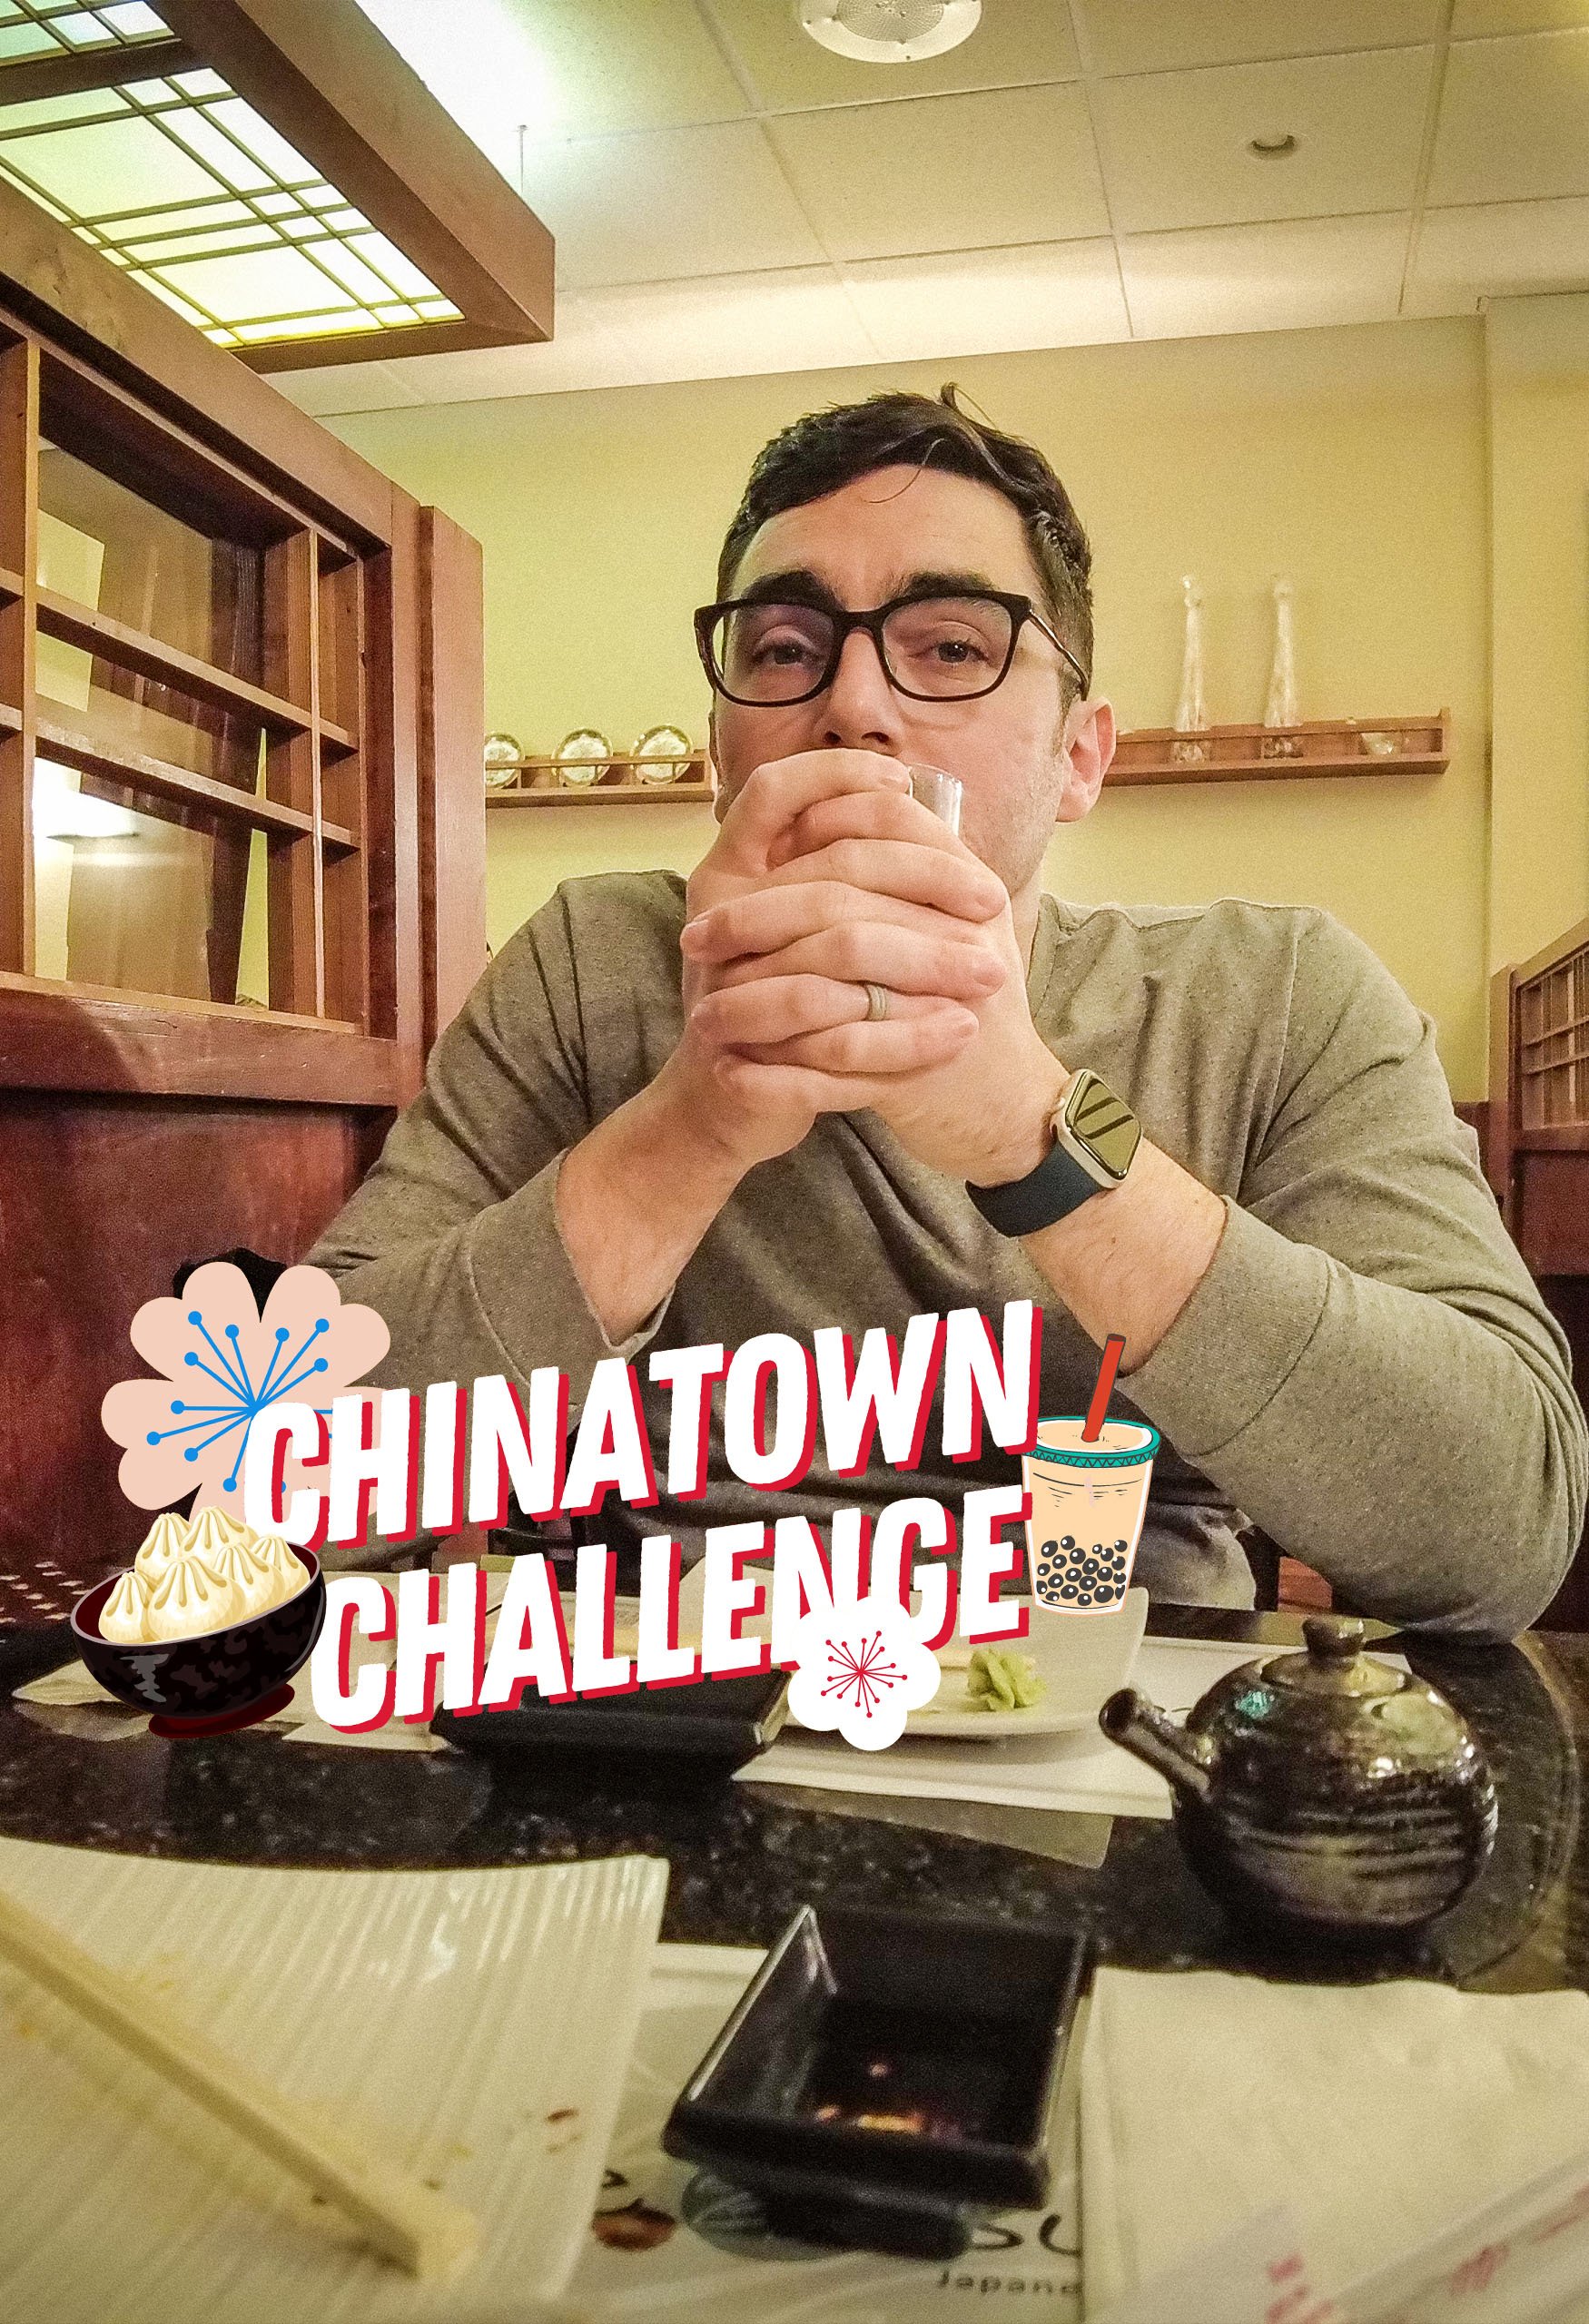 Chinatown Challenge: Winner